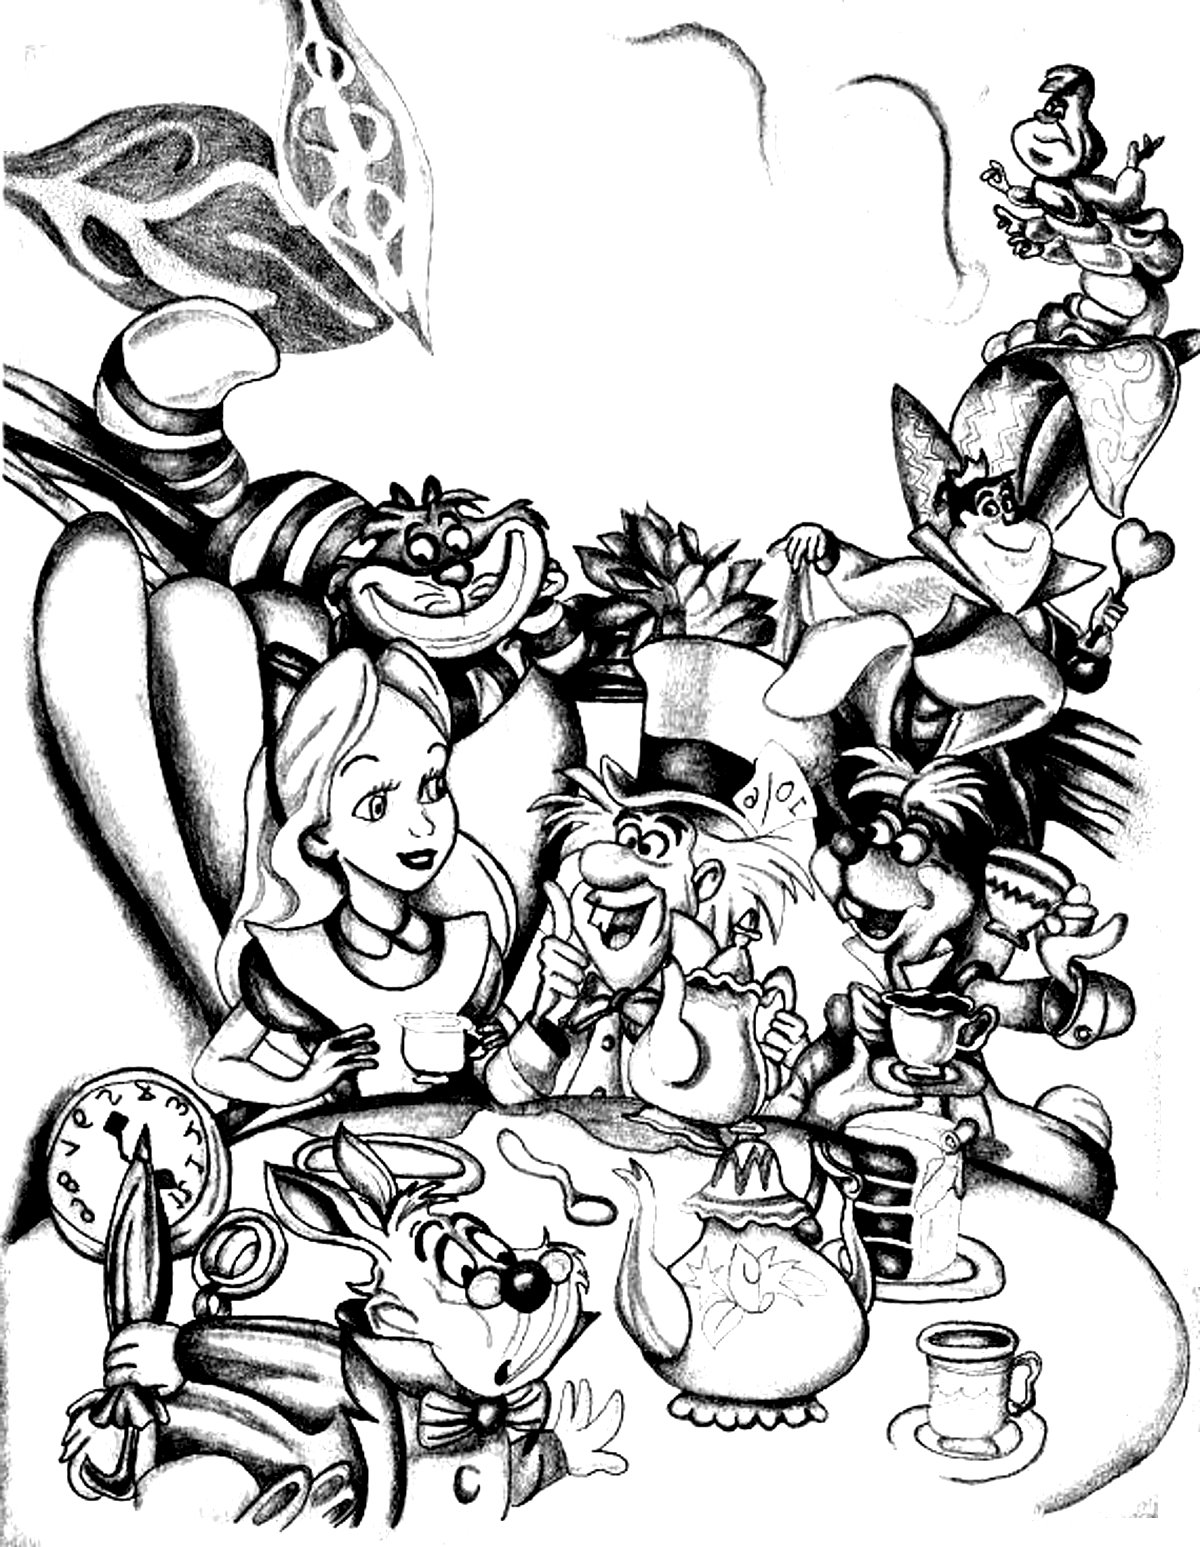 Várias personagens de Alice no País das Maravilhas (Disney). Apresenta Alice, o Chapeleiro Louco e a Lebre de março, bem como o Gato de Cheshire, a Rainha de Copas e o Rei de Copas.